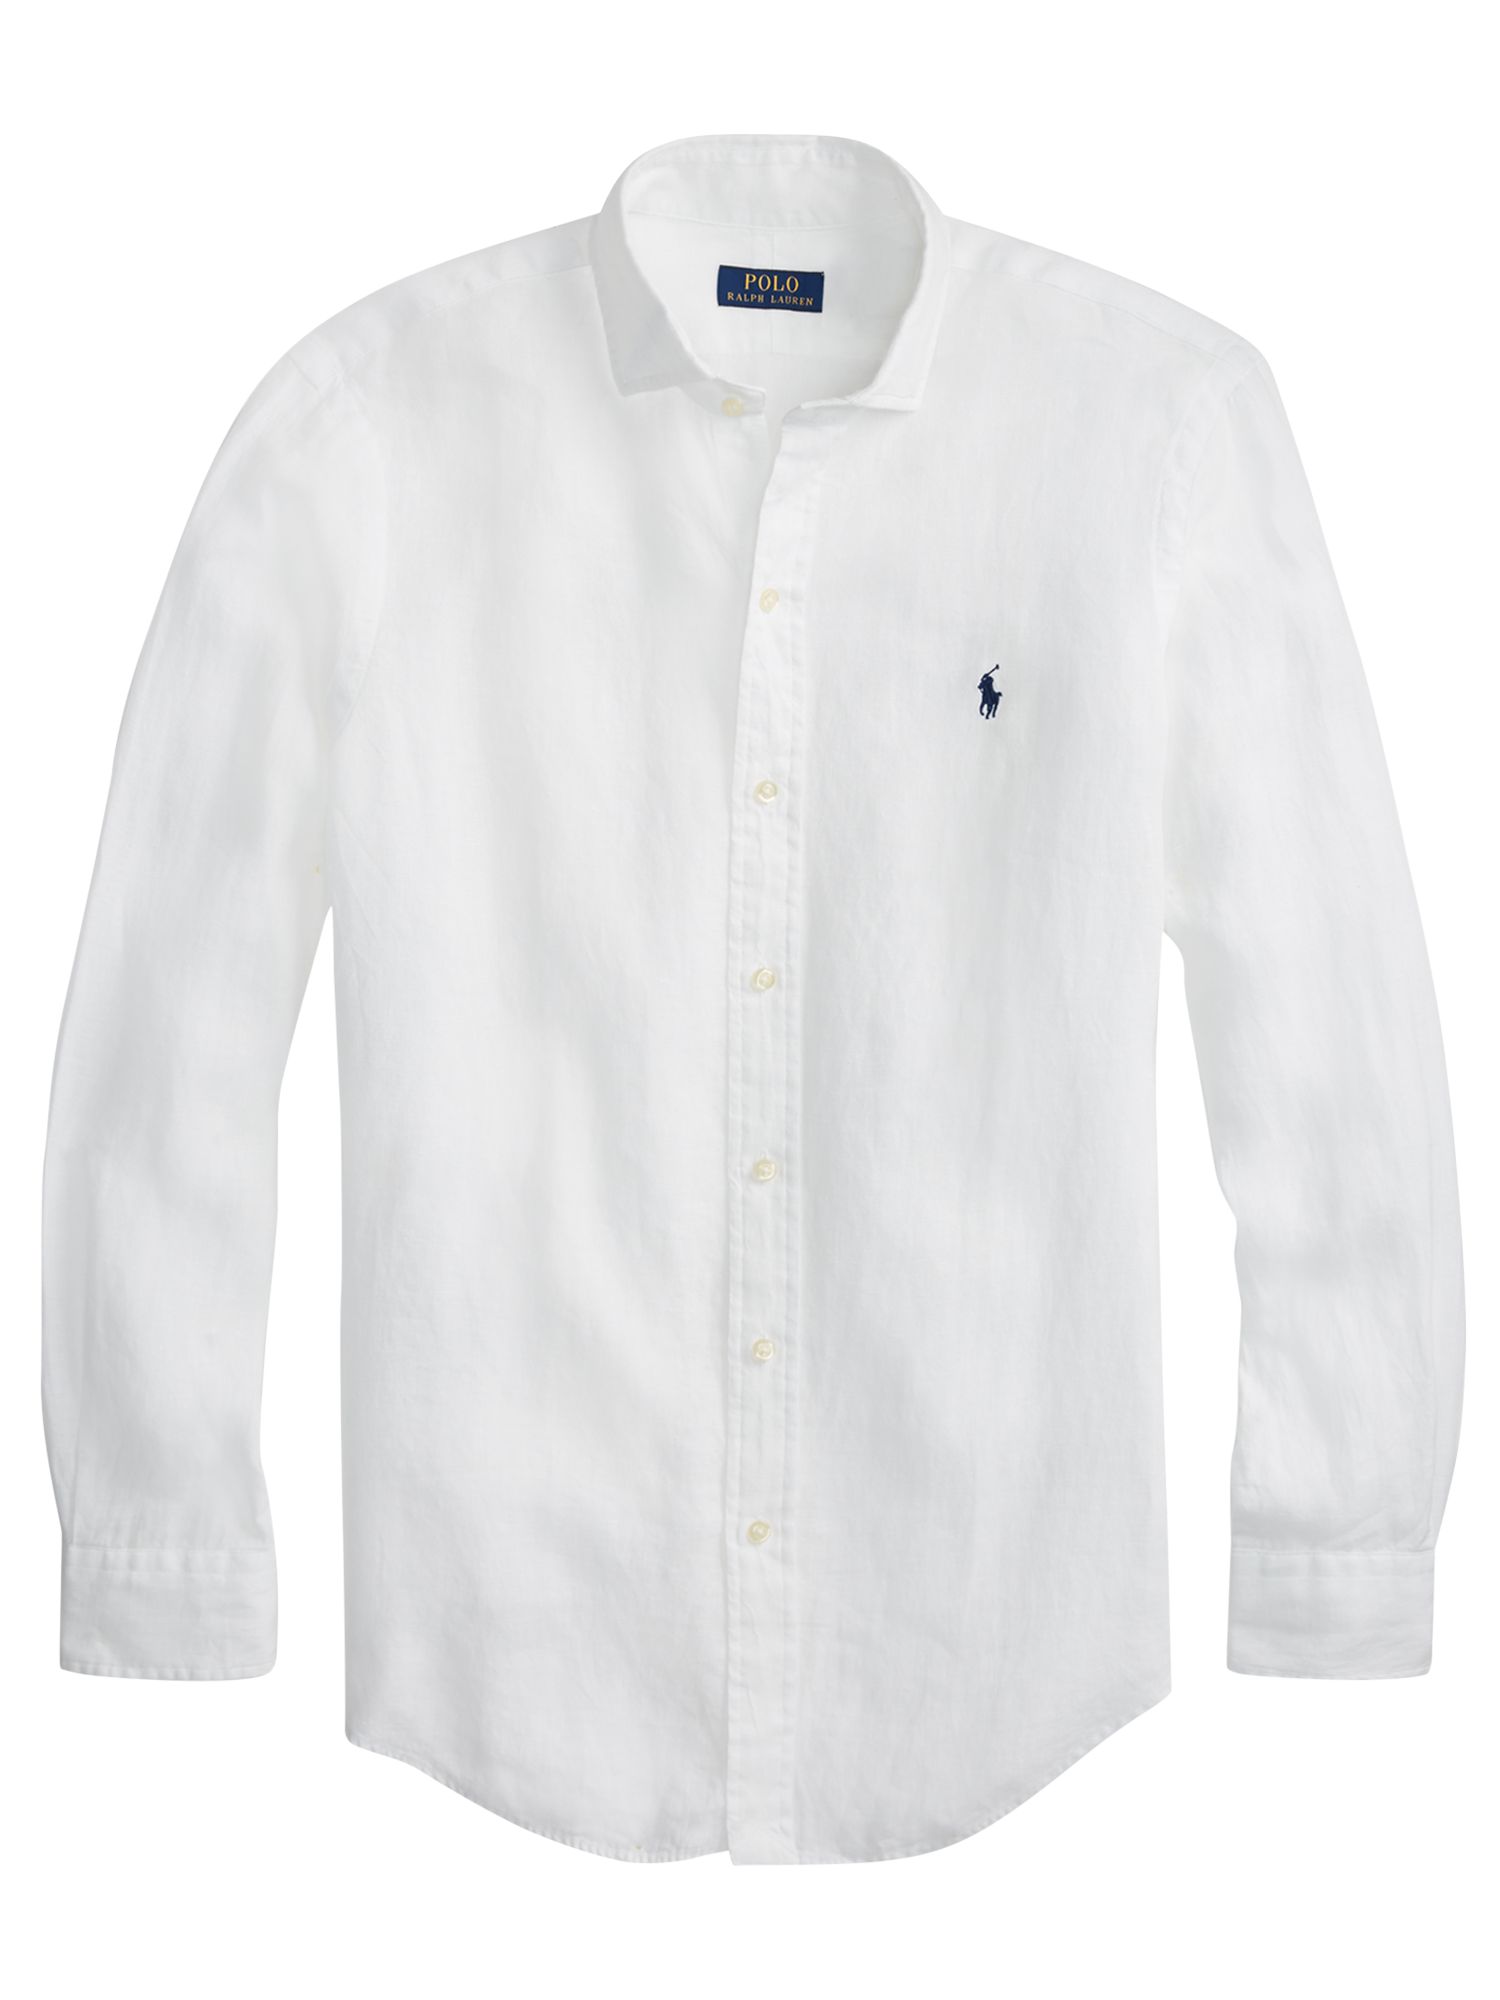 polo ralph lauren mens white linen shirt